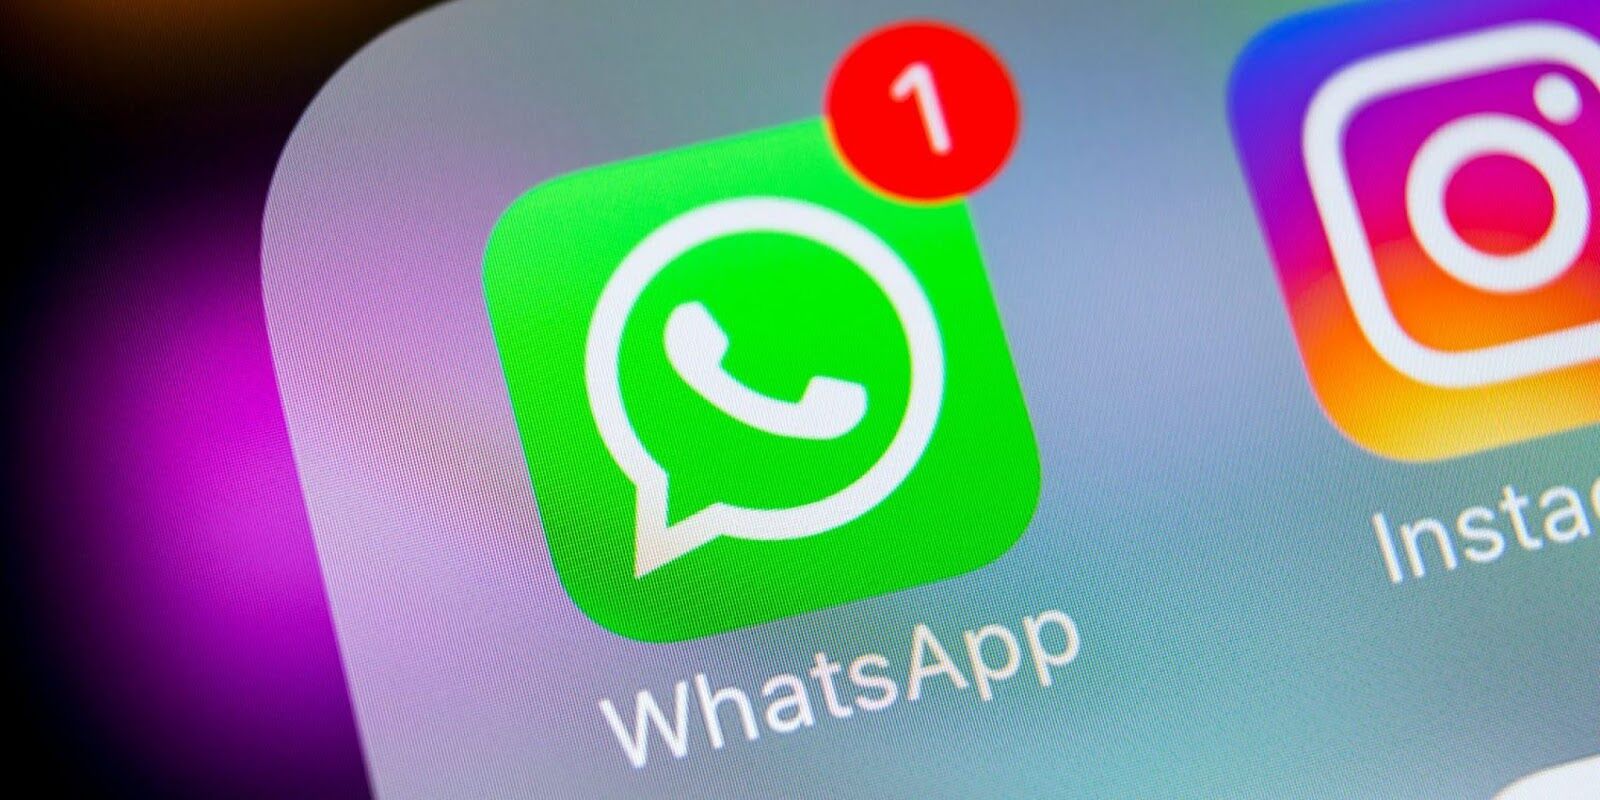 WhatsApp Down : व्हाट्सएप की सर्विस अचानक हुई बंद, भारत सहित दुनिया भर में करोड़ों यूजर्स को हो रही परेशानी